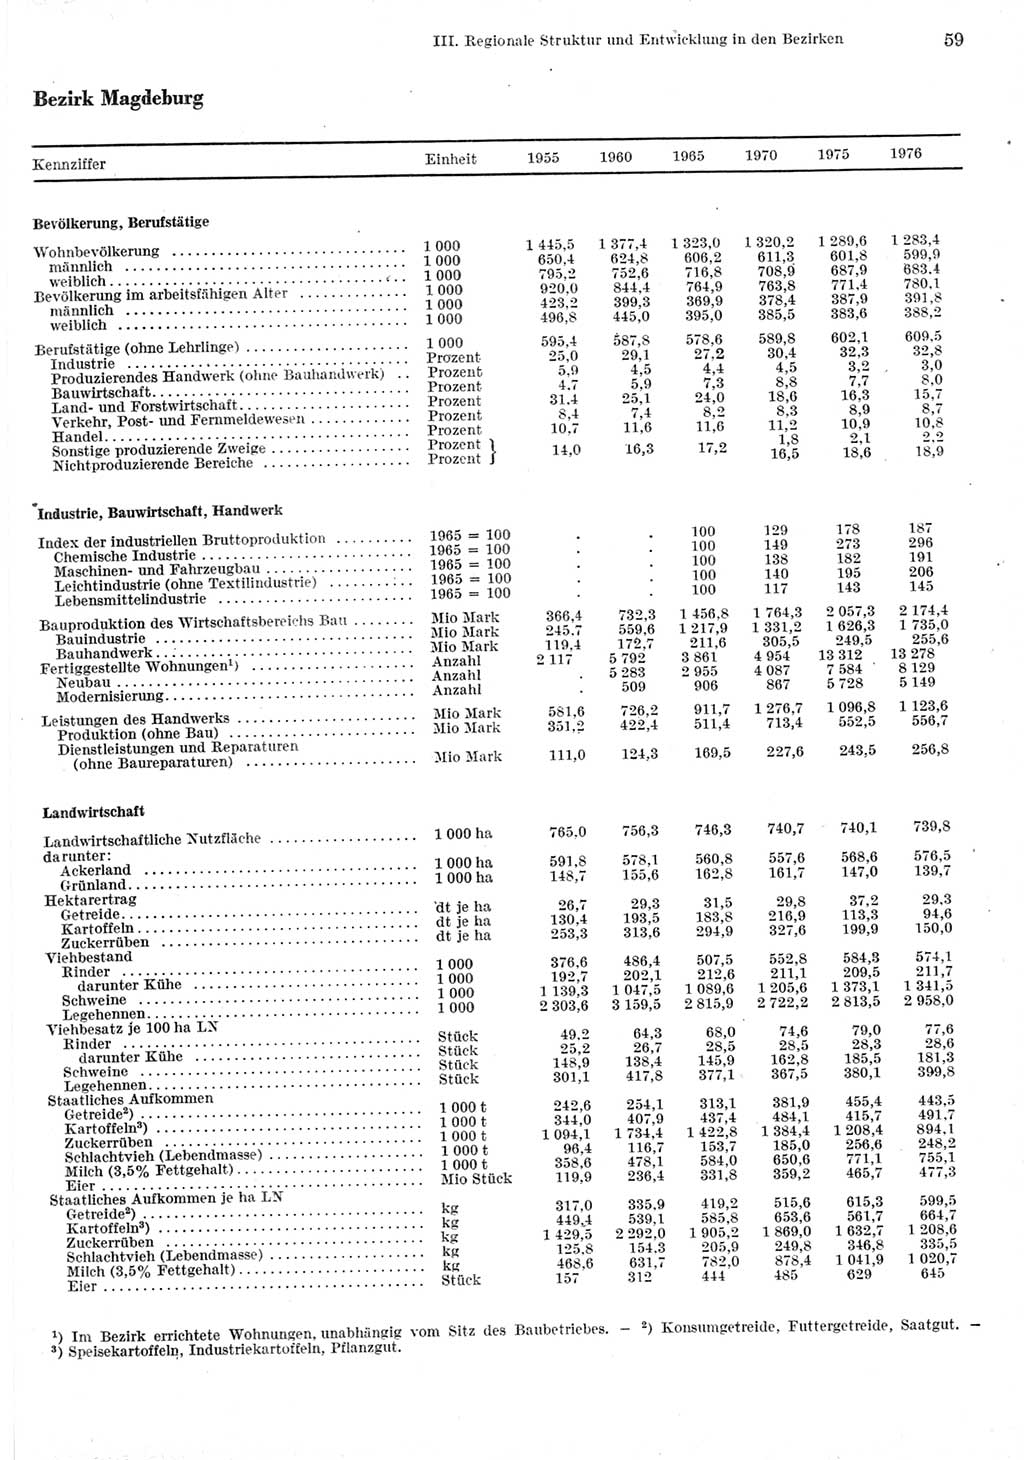 Statistisches Jahrbuch der Deutschen Demokratischen Republik (DDR) 1977, Seite 59 (Stat. Jb. DDR 1977, S. 59)